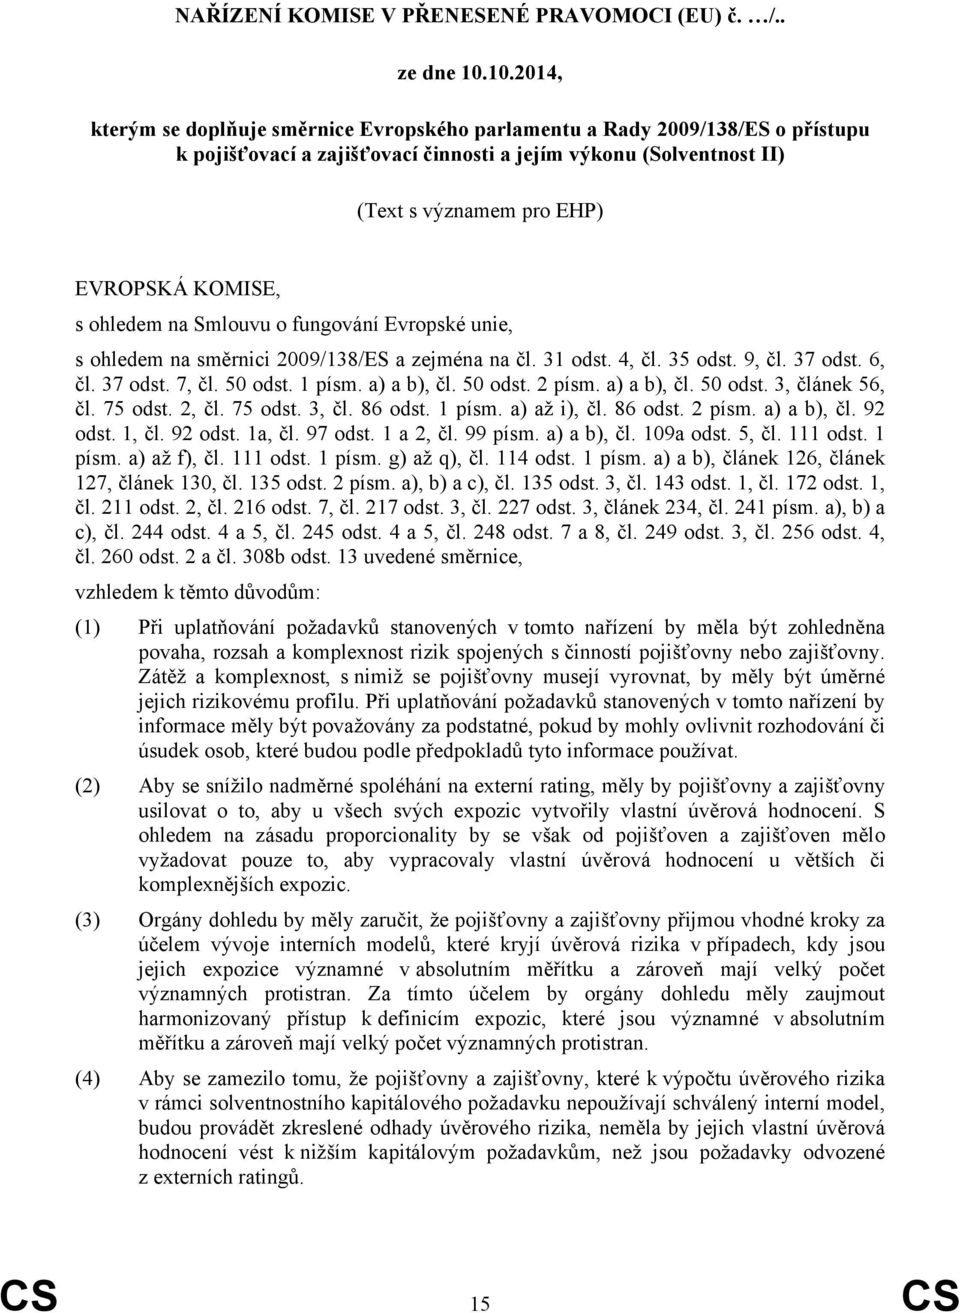 KOMISE, s ohledem na Smlouvu o fungování Evropské unie, s ohledem na směrnici 2009/138/ES a zejména na čl. 31 odst. 4, čl. 35 odst. 9, čl. 37 odst. 6, čl. 37 odst. 7, čl. 50 odst. 1 písm. a) a b), čl.